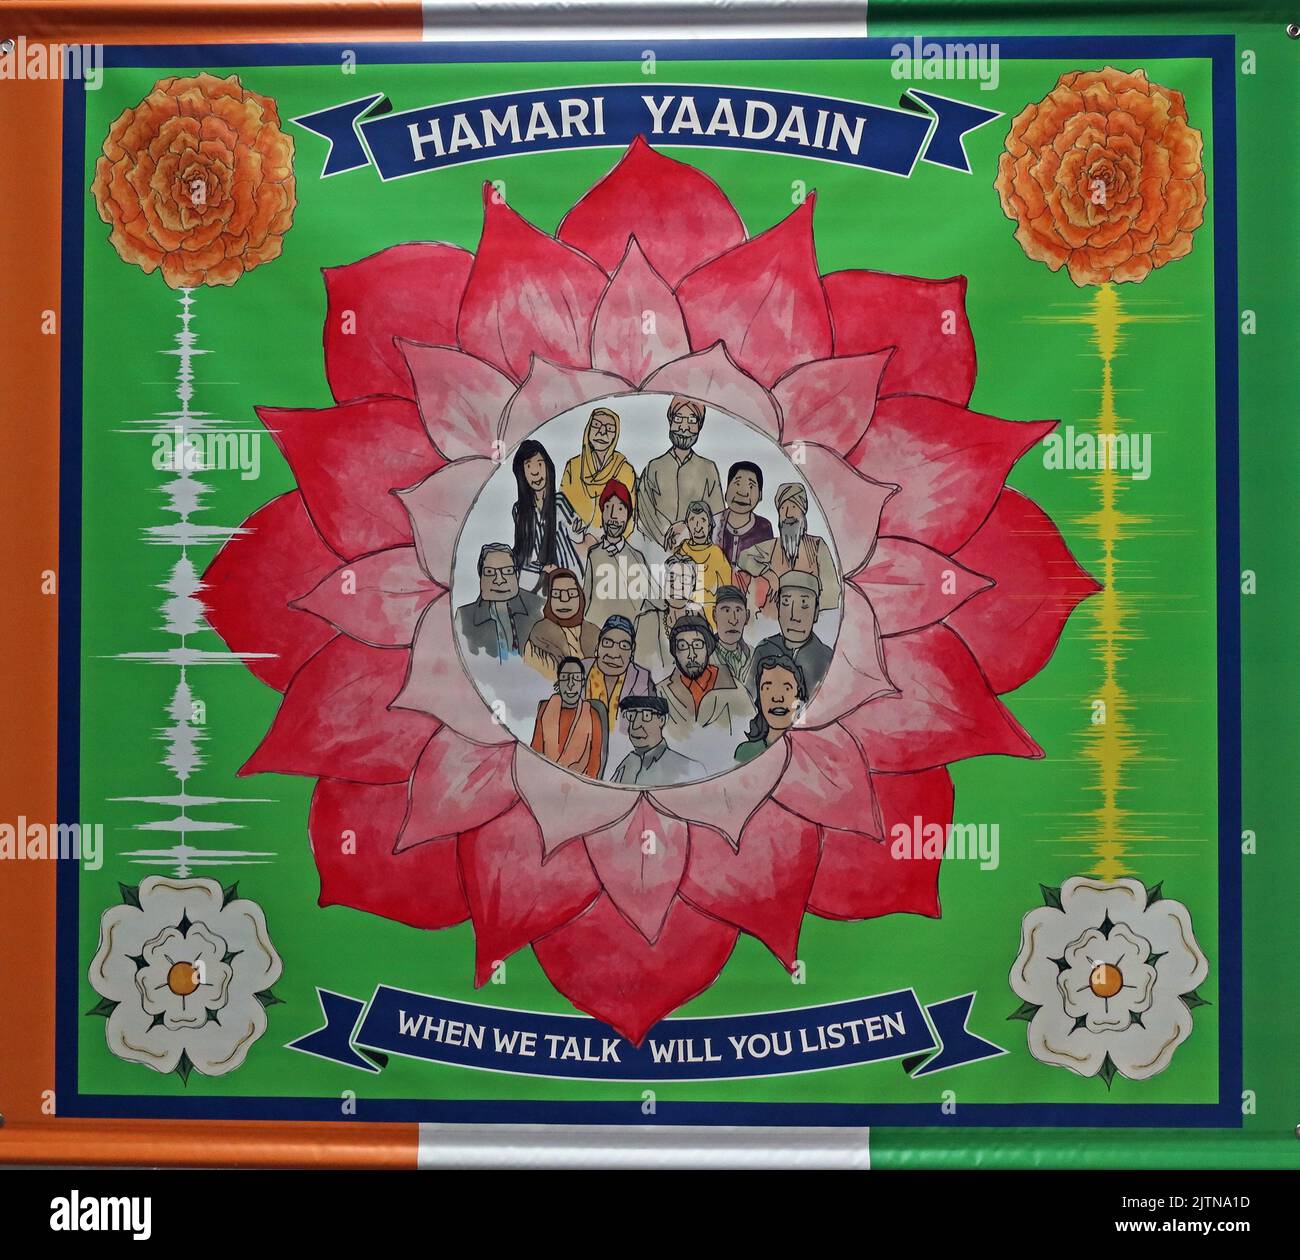 Bannières pour l'espoir et le changement - Hamari Yaadain - quand nous parlons vous écouterez Banque D'Images